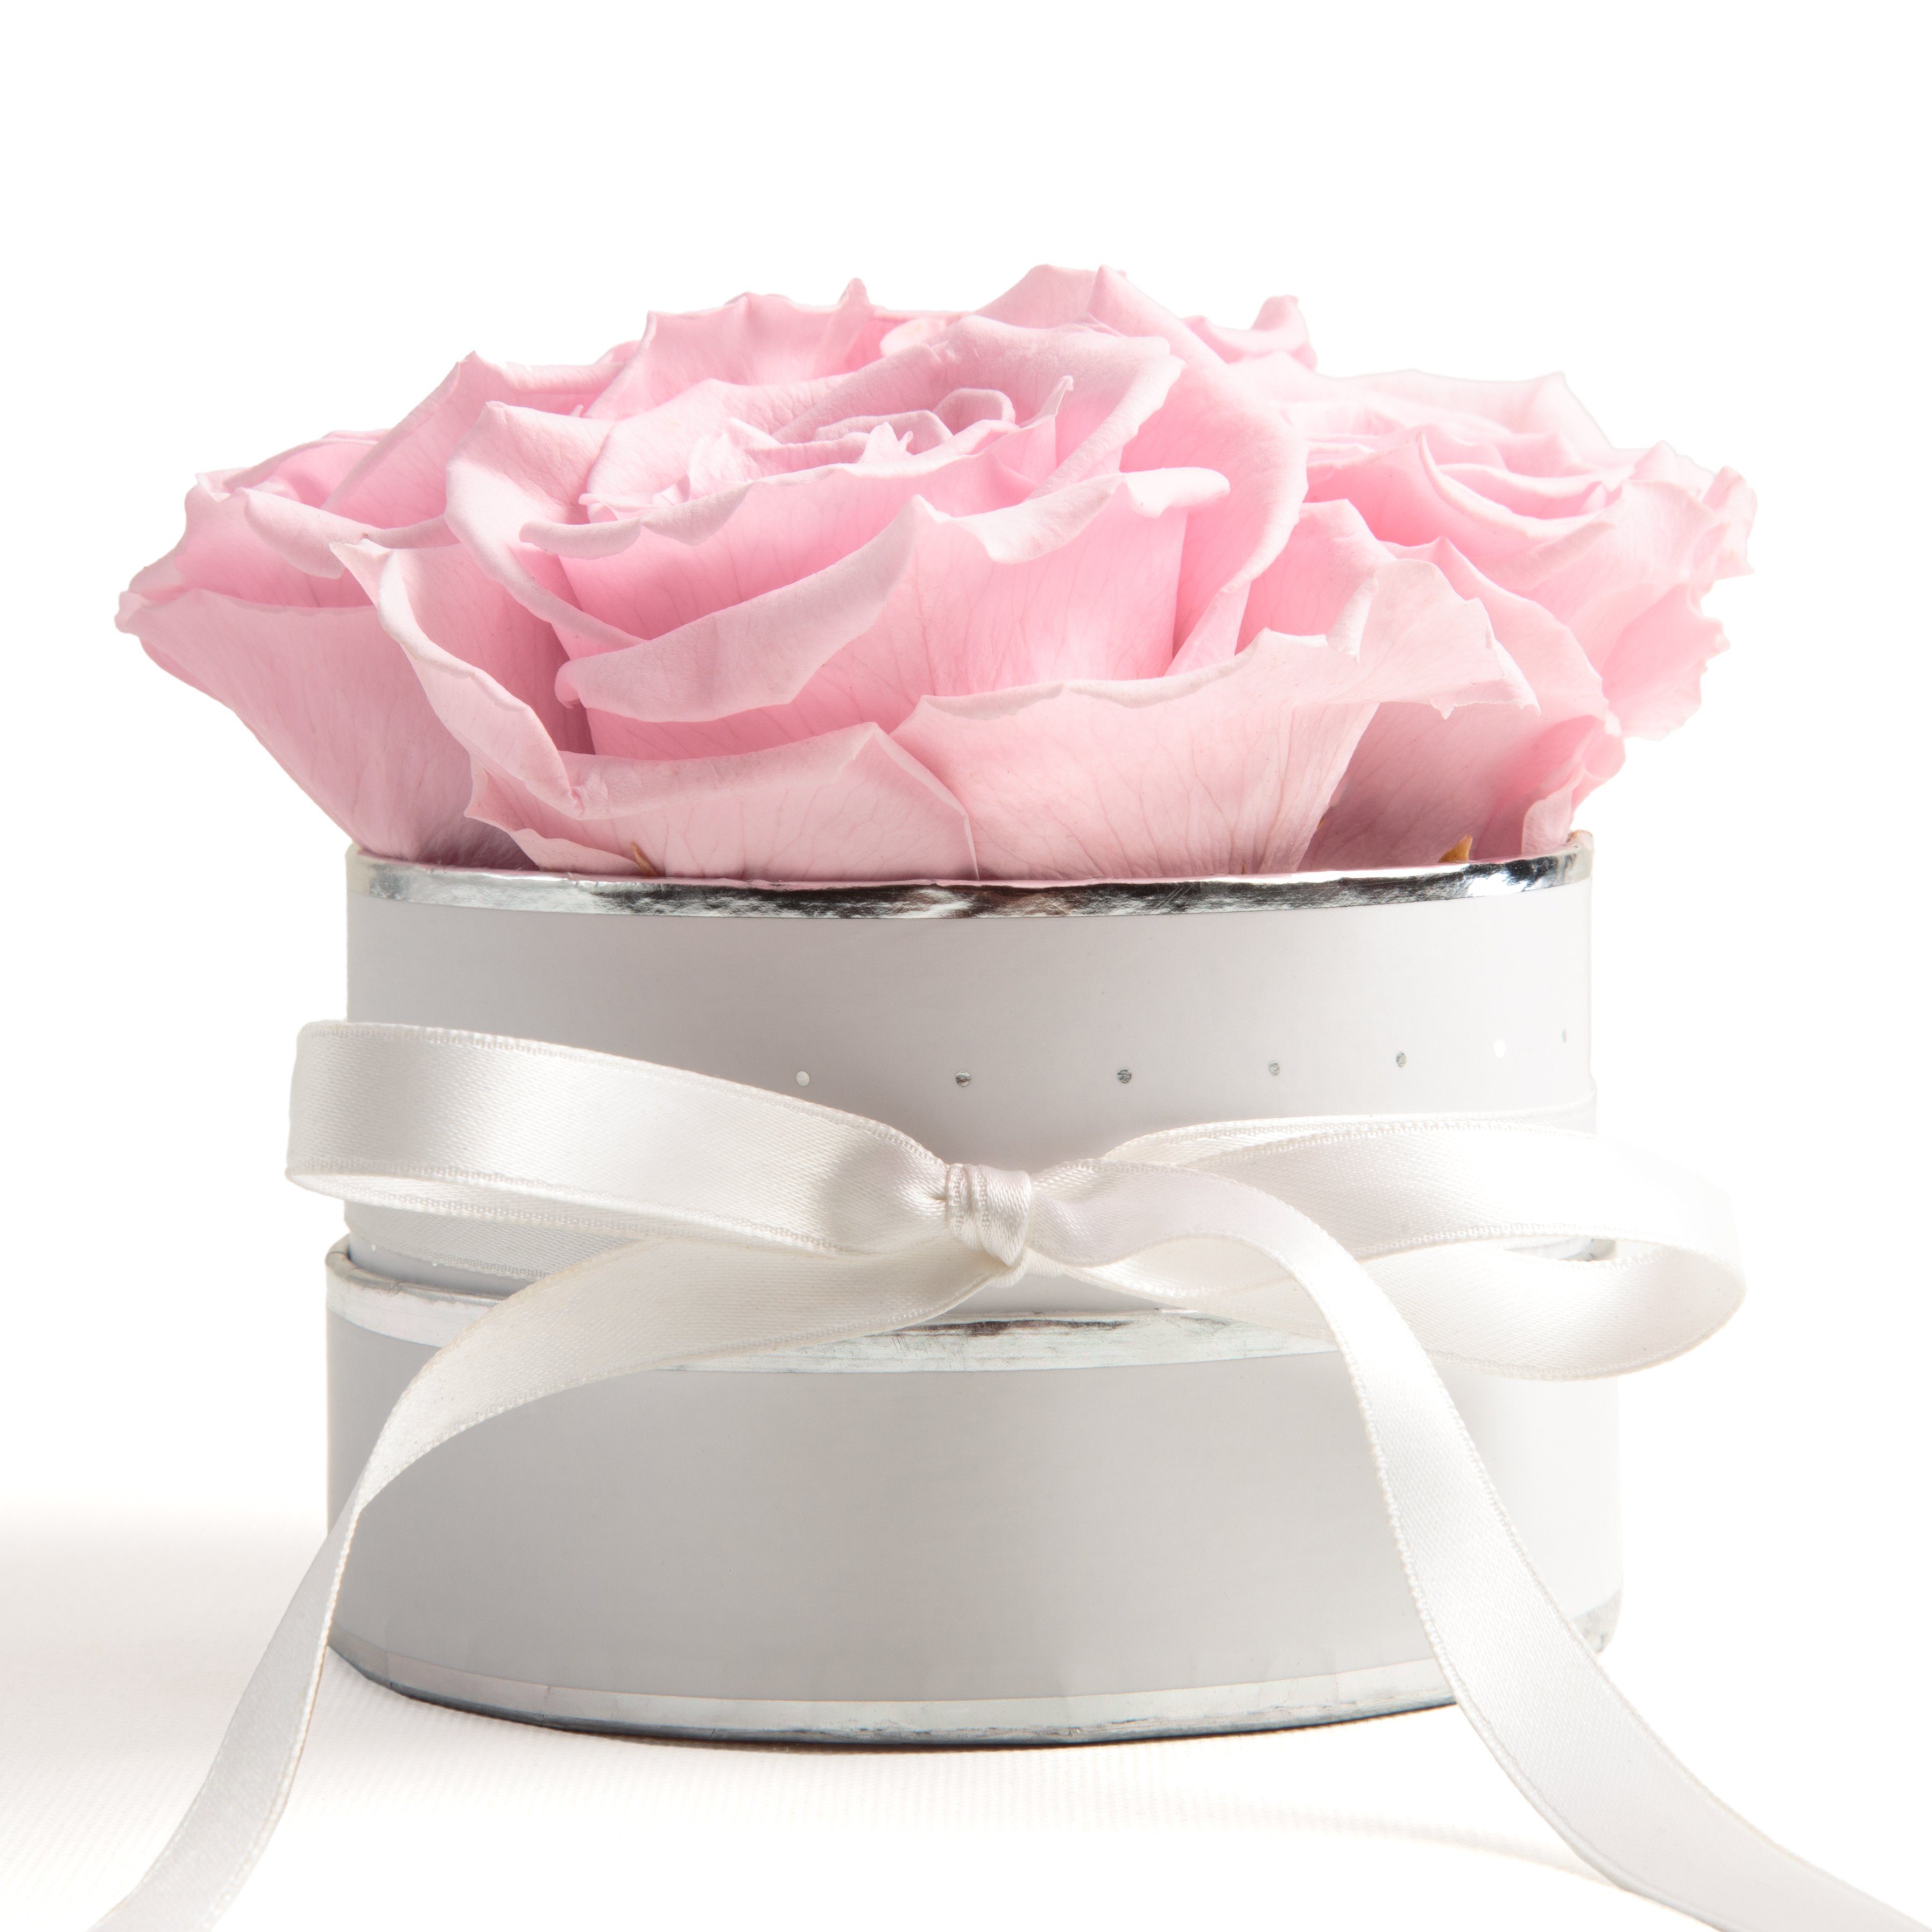 Kunstblume Infinity Rosenbox weiß rund 4 konservierte Rosen inklusiv Geschenkbox Rose, ROSEMARIE SCHULZ Heidelberg, Höhe 10 cm, echte Rosen haltbar 3 Jahre Rosa | Kunstblumen